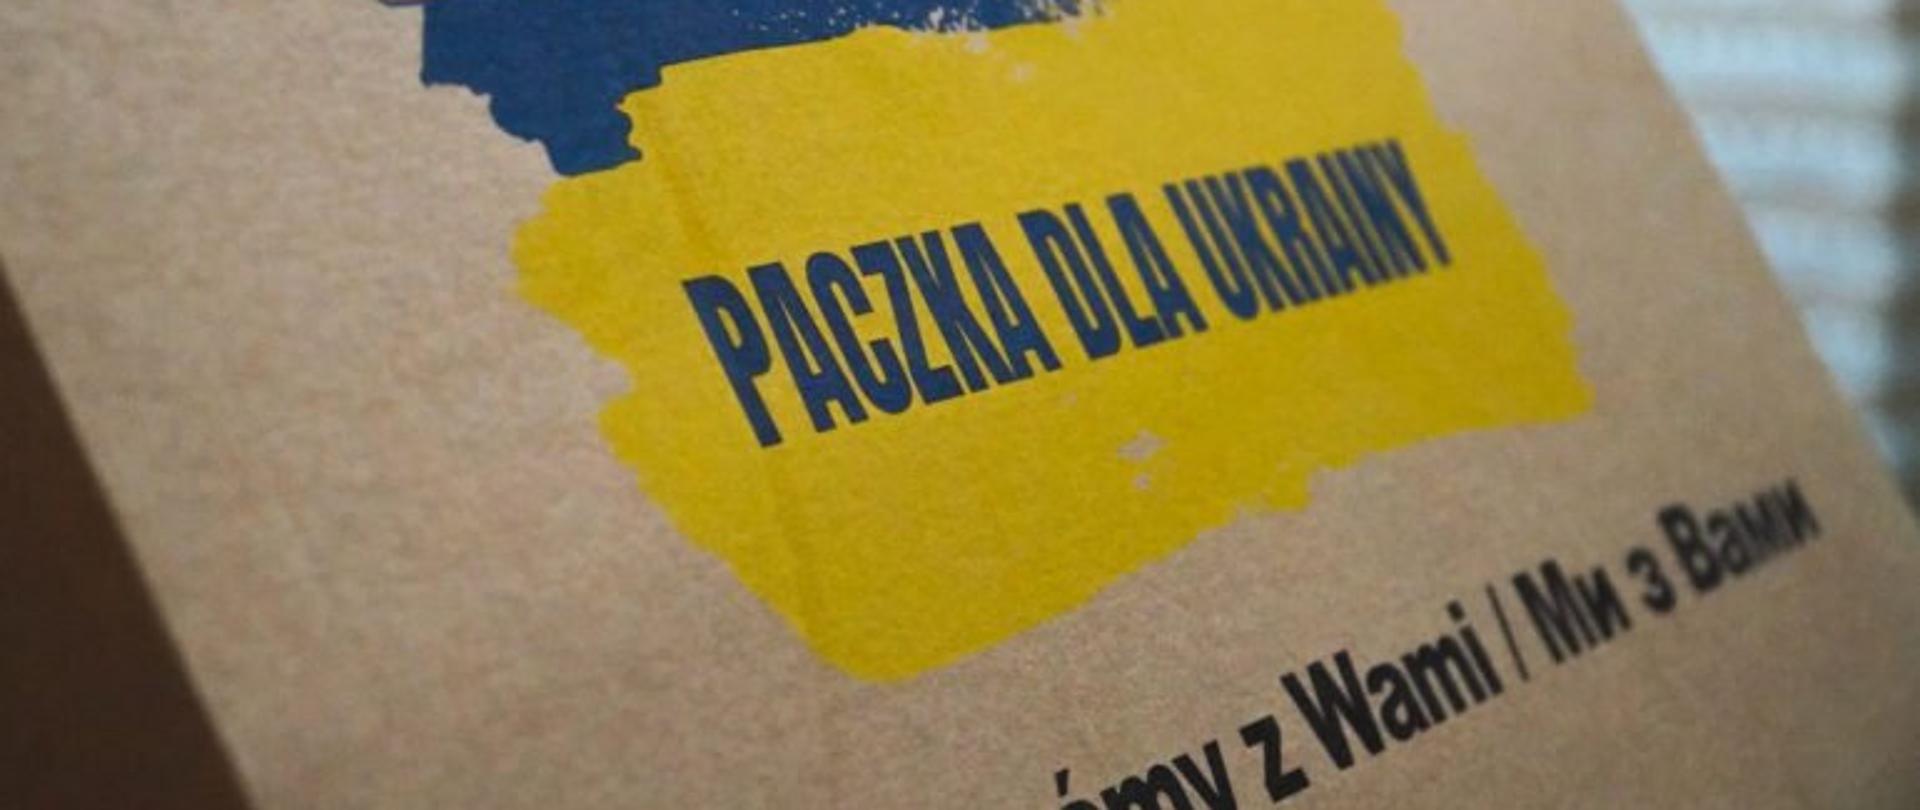 Karton z napisem "paczka dla Ukrainy"